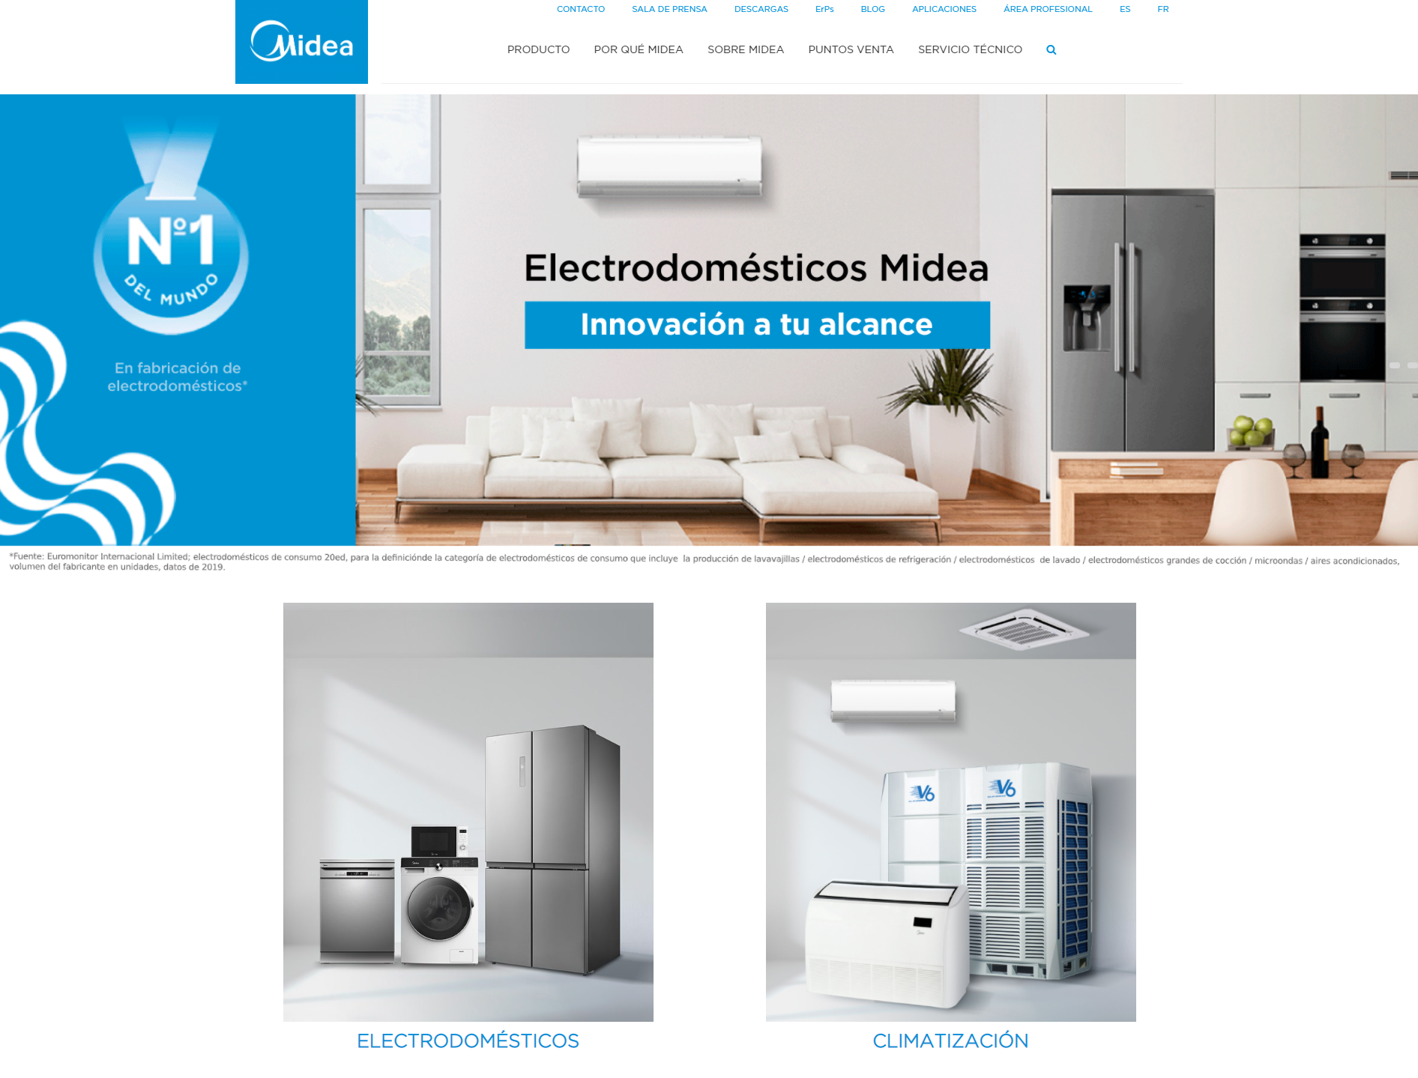 Midea electrodomésticos presenta su nueva web